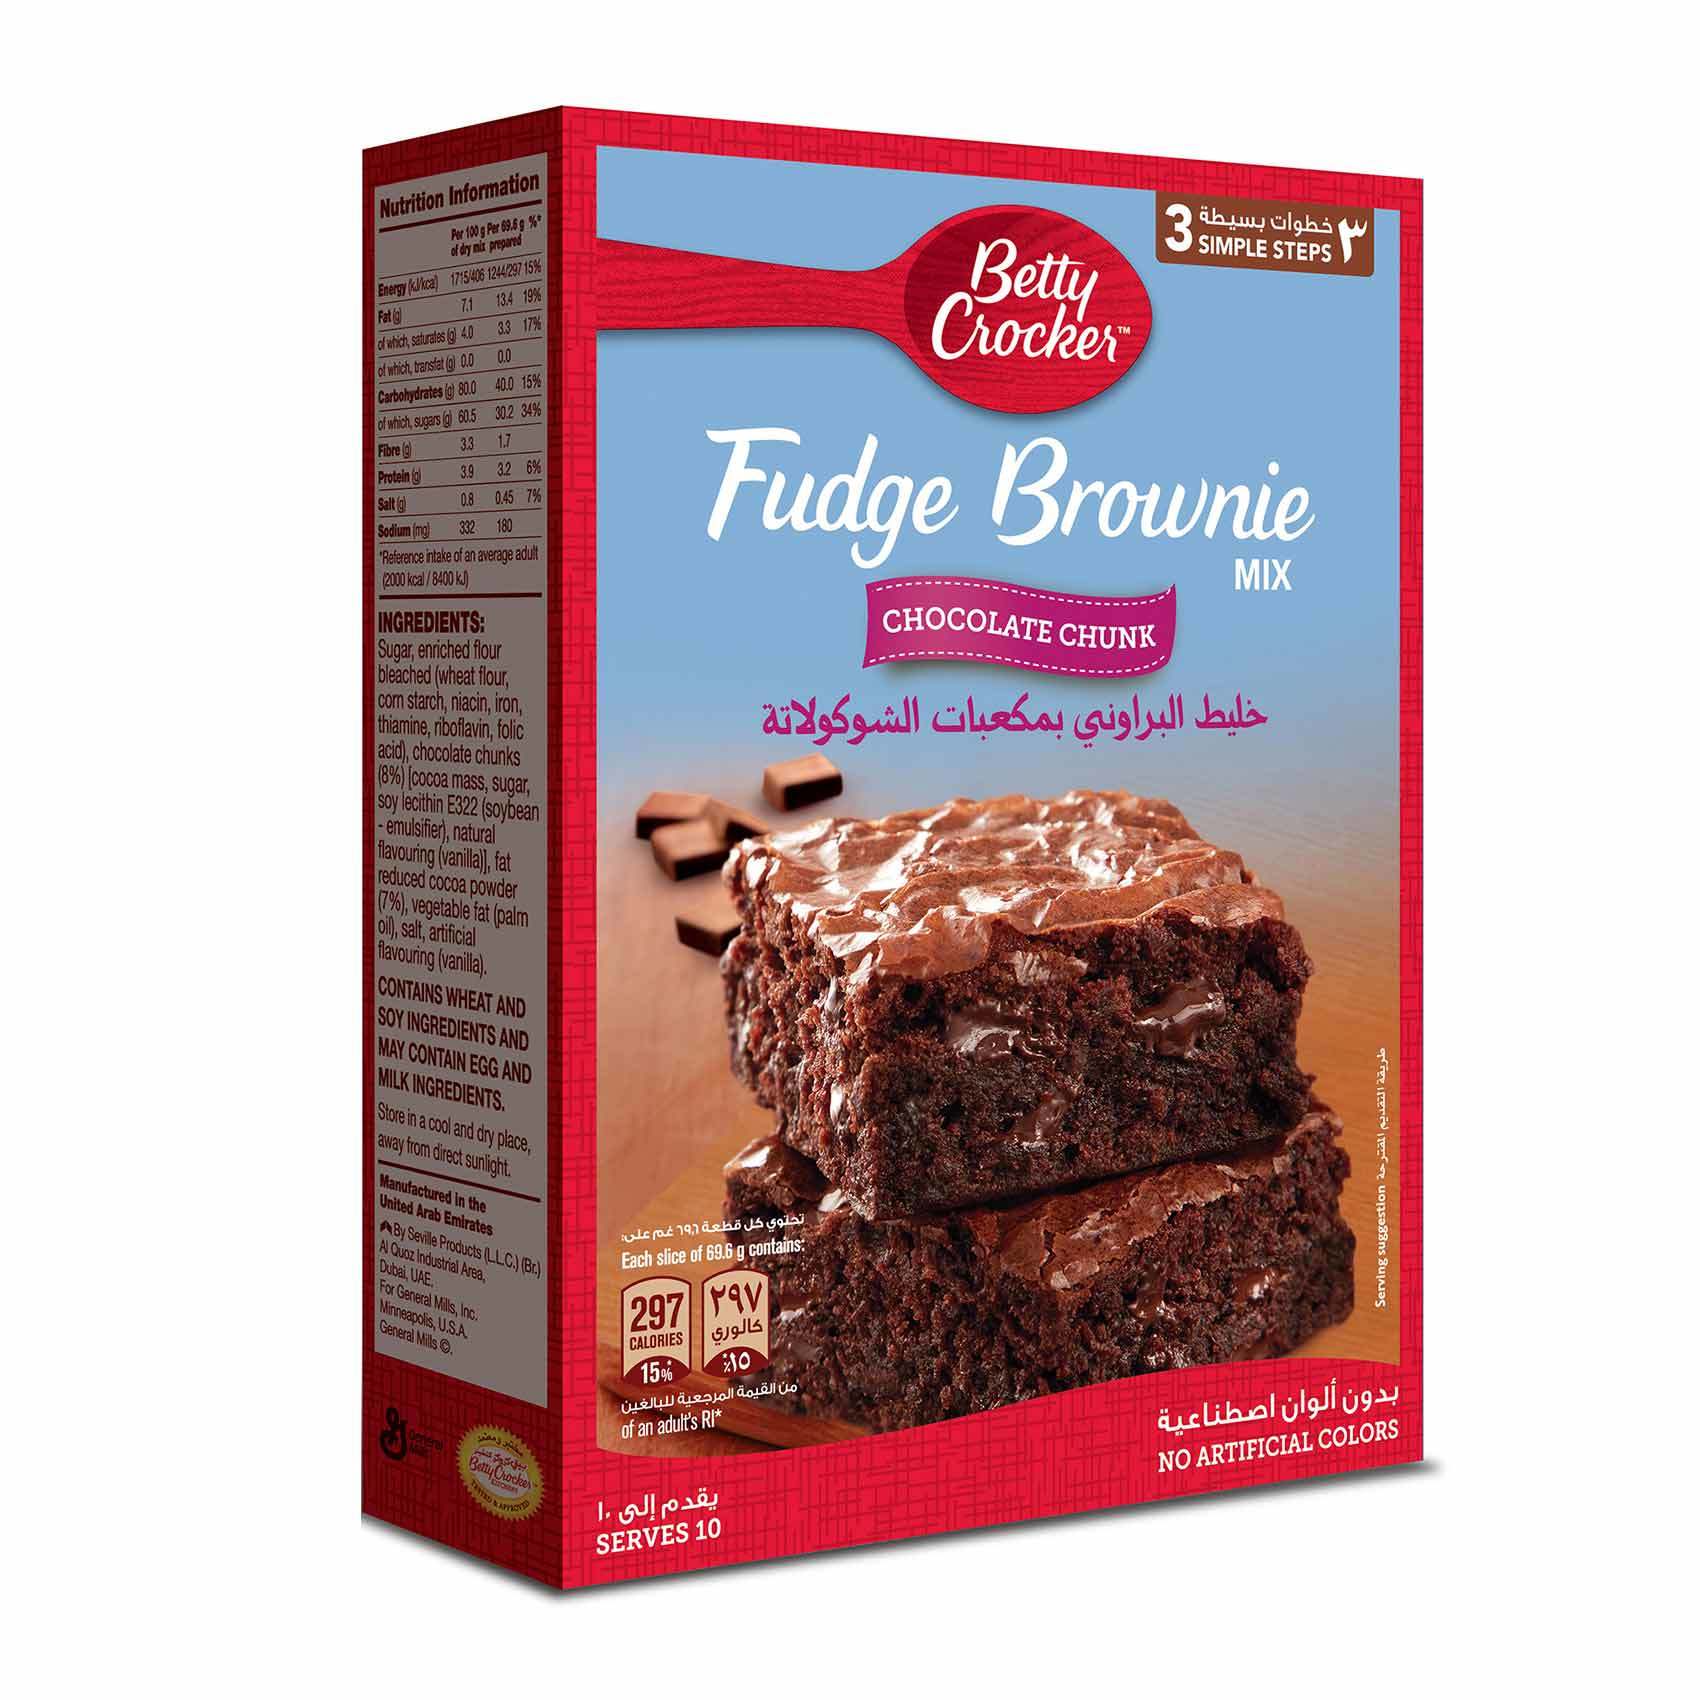 اشترِ Betty Crocker Chocolate Chunk Supreme مزيج براوني 500 غ تسوق عبر الإنترنت دولاب طعام على كارفور المملكة العربية السعودية